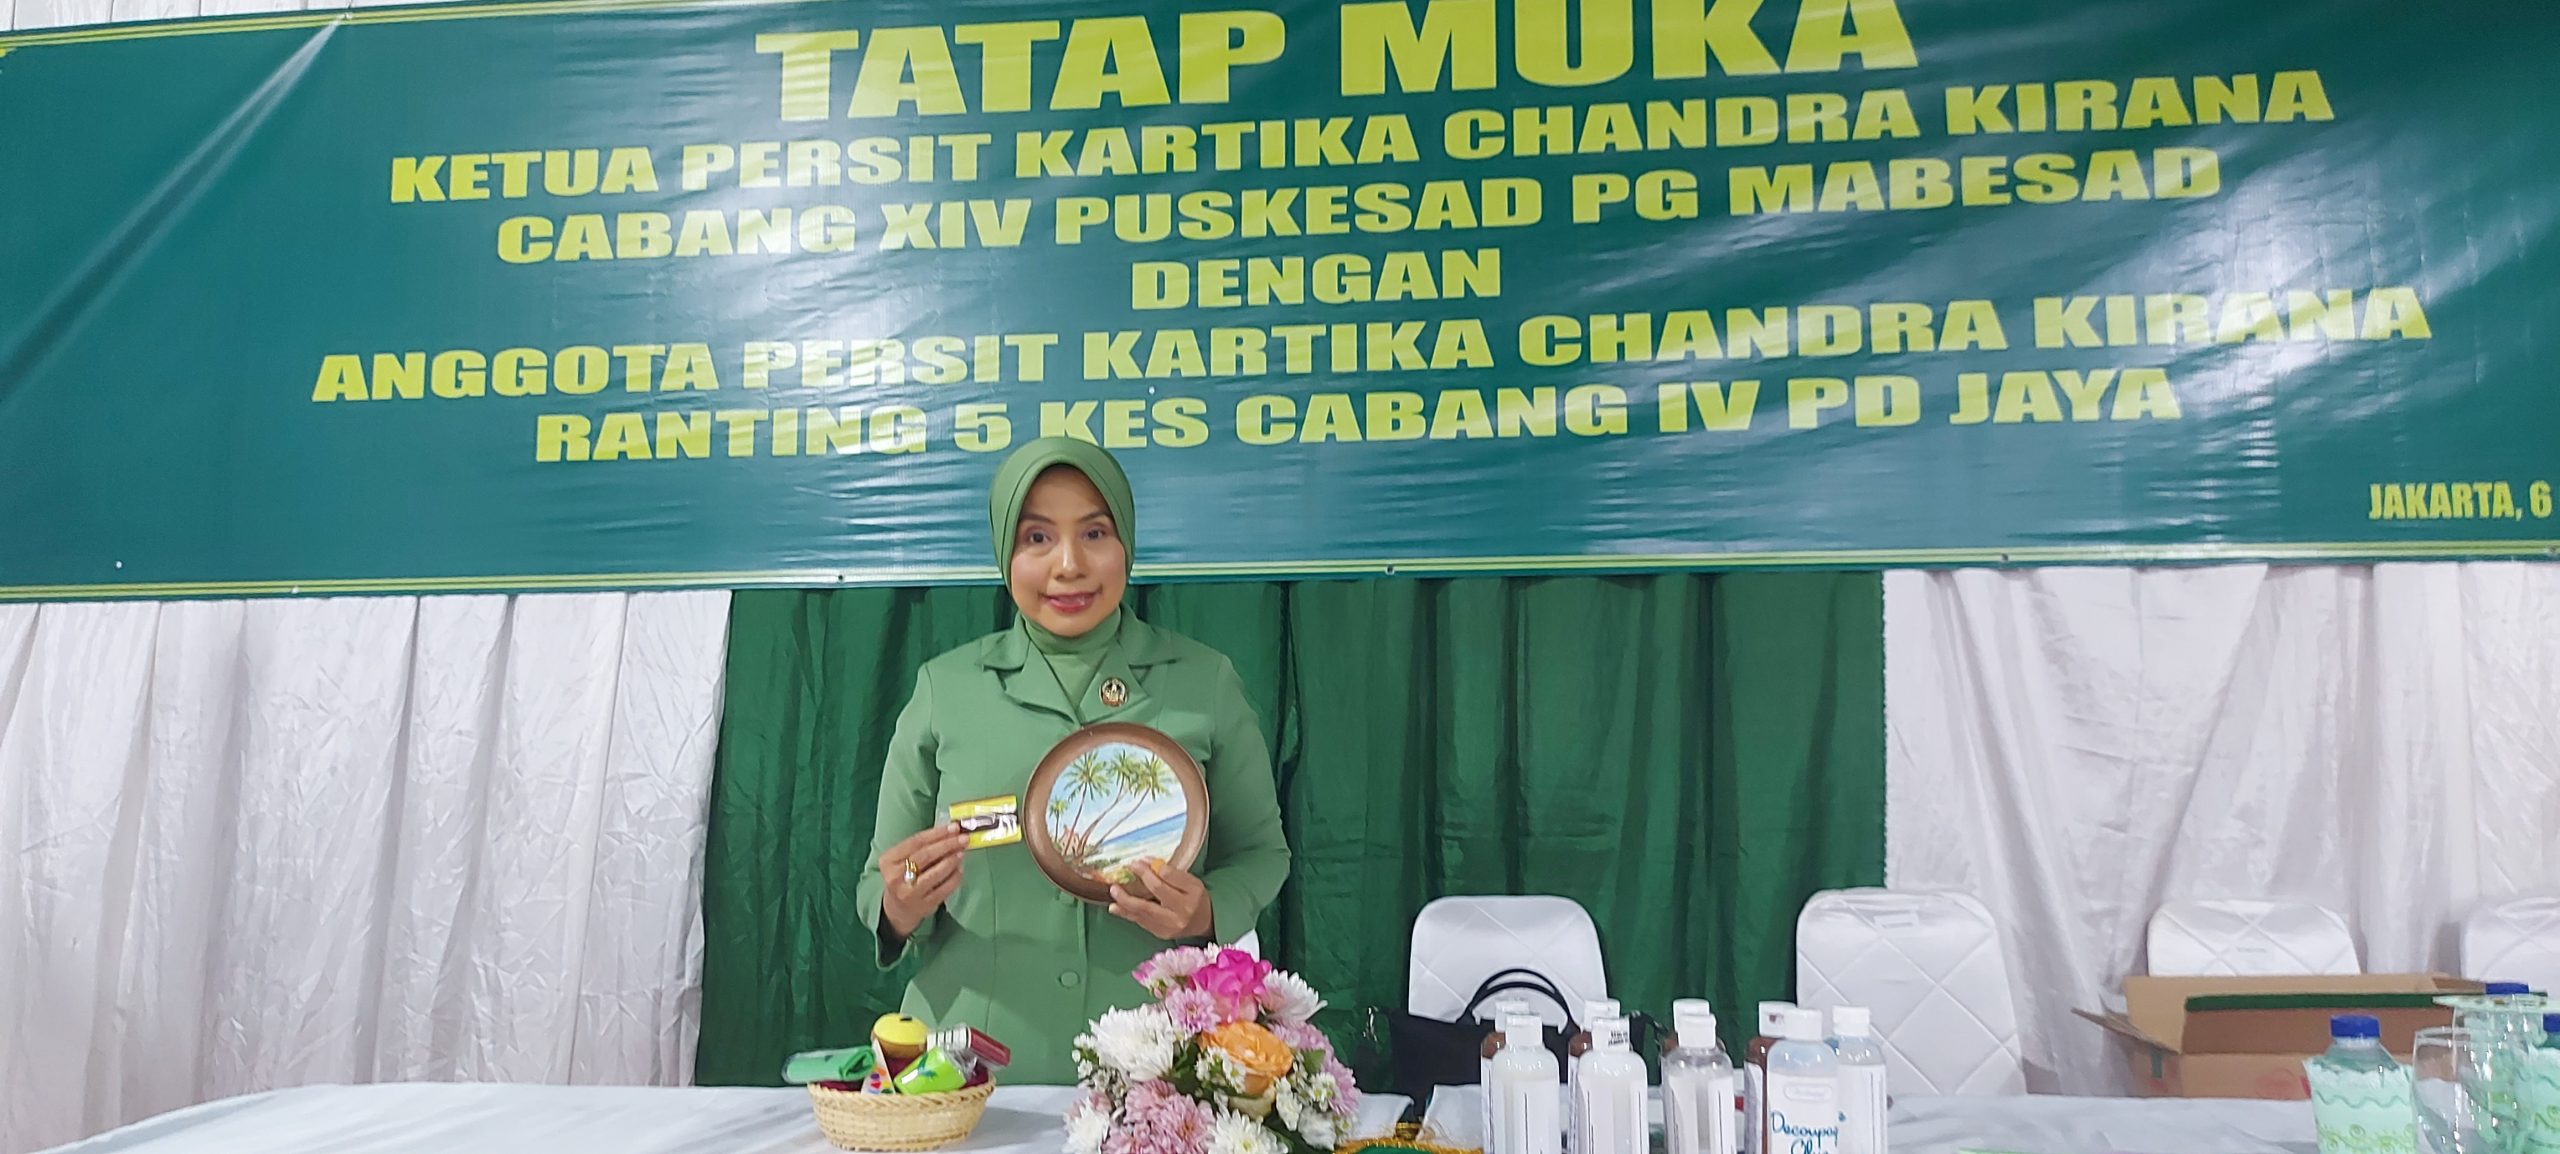 Ketua Persit KCK Cab XIV Puskesad Umi Purwo: Paling Utama Silaturahmi Tetap di Jaga